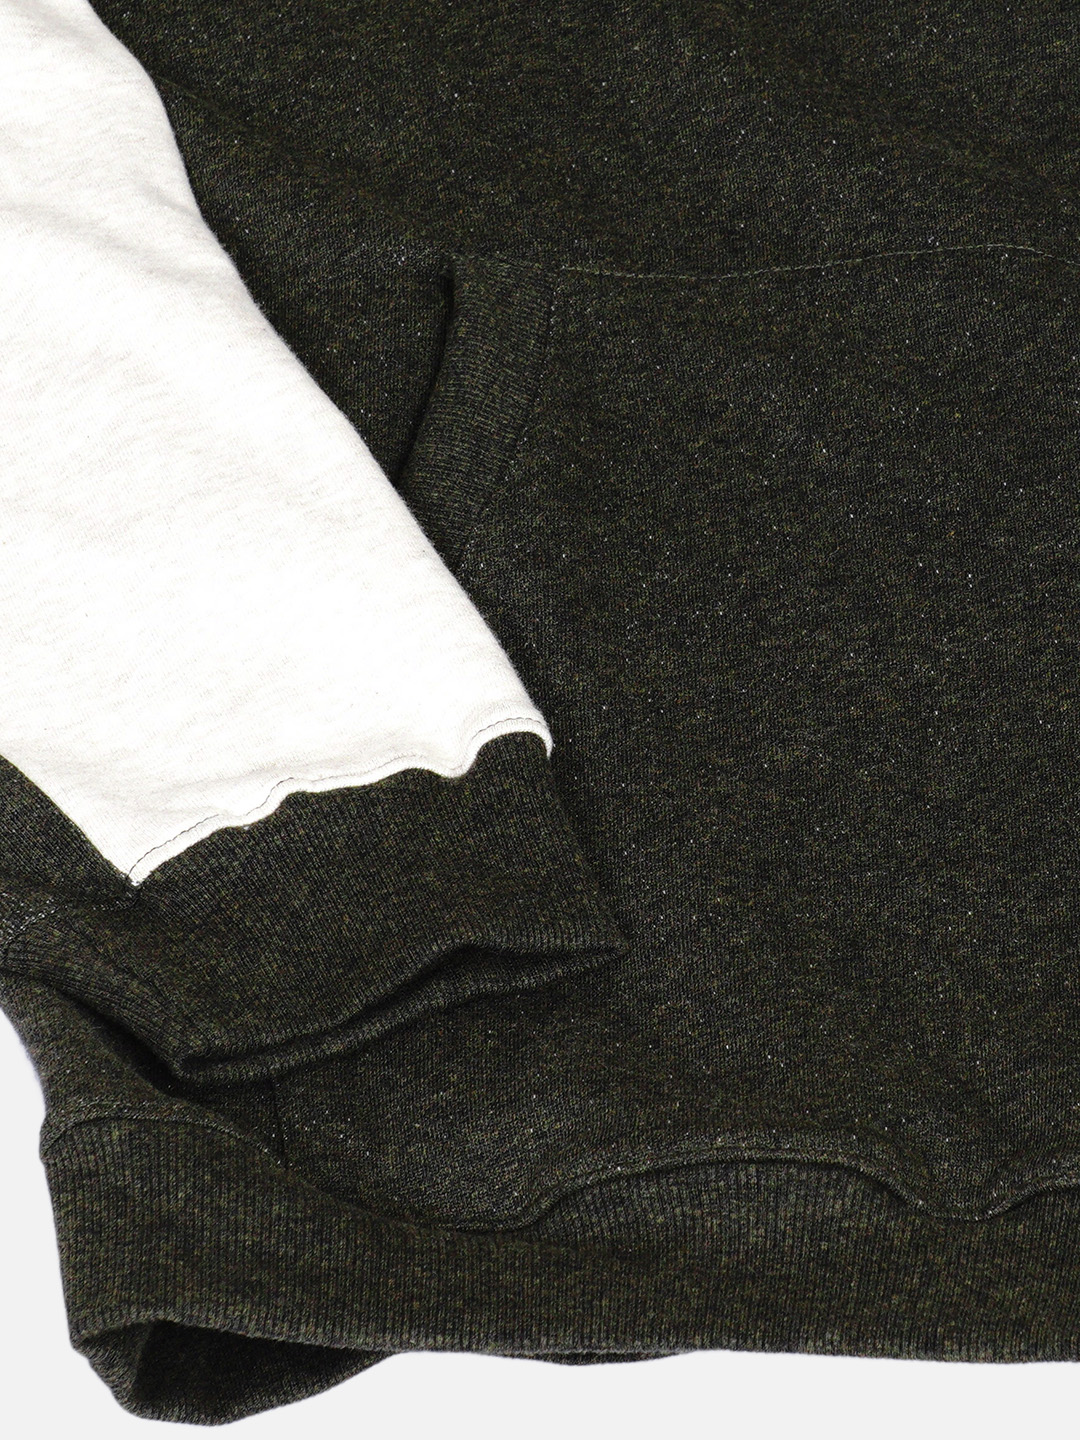 winterwear/sweatshirts/JPSWT75017/jpswt75017-2.jpg